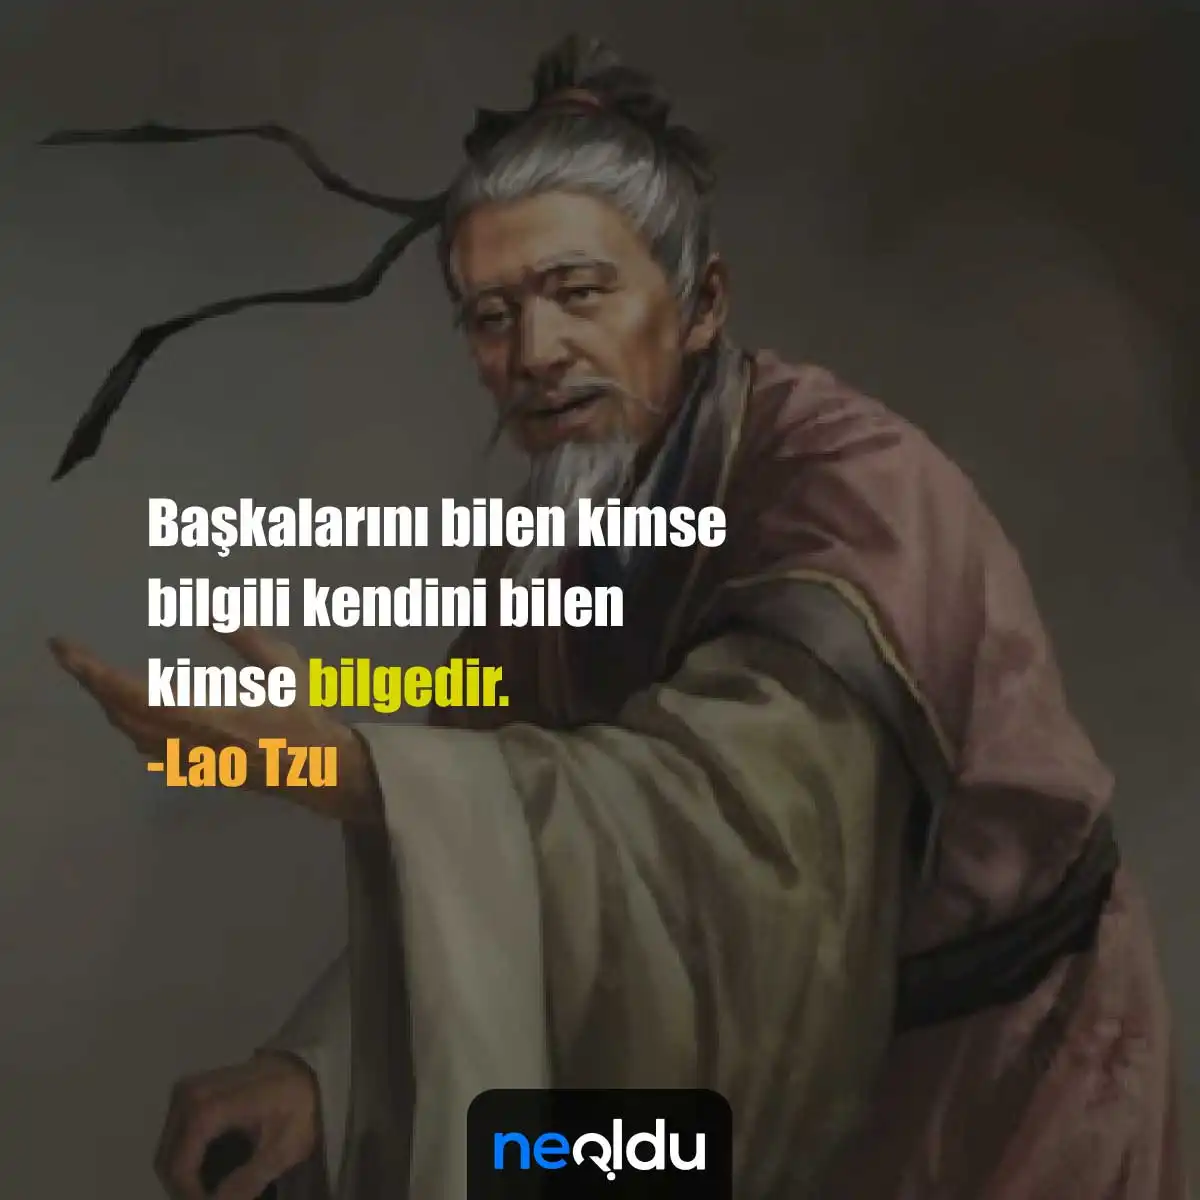 Lao Tzu Sözleri